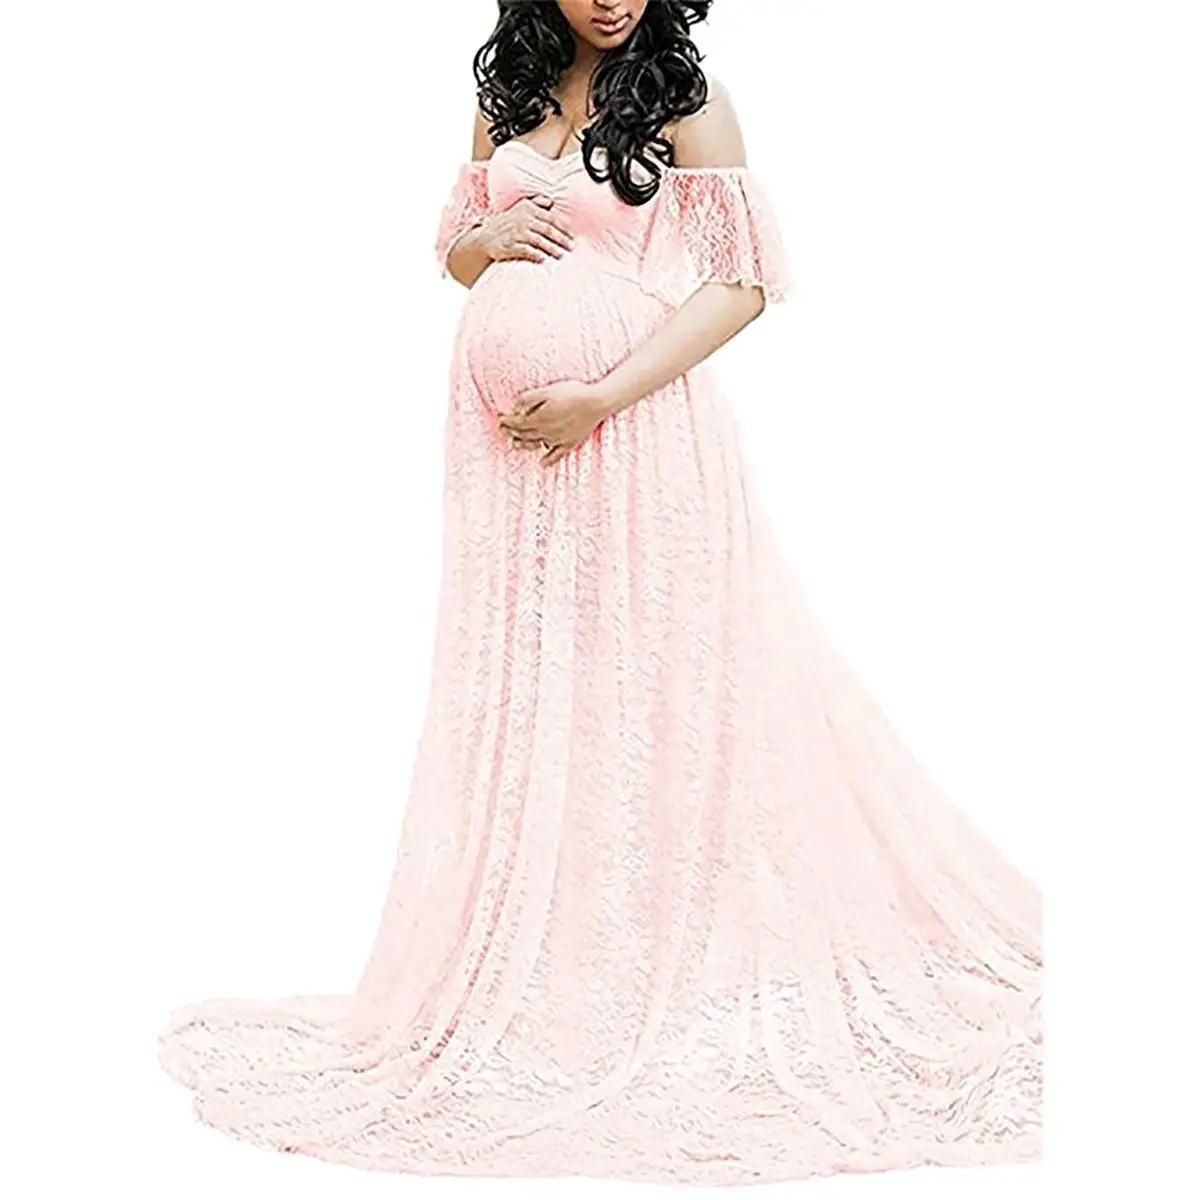 encantador para mamá vestido de maternidad largo de gasa con hombros descubiertos cuidado de enfermería vestido elegante para boda Vestido de maternidad para mujeres embarazadas